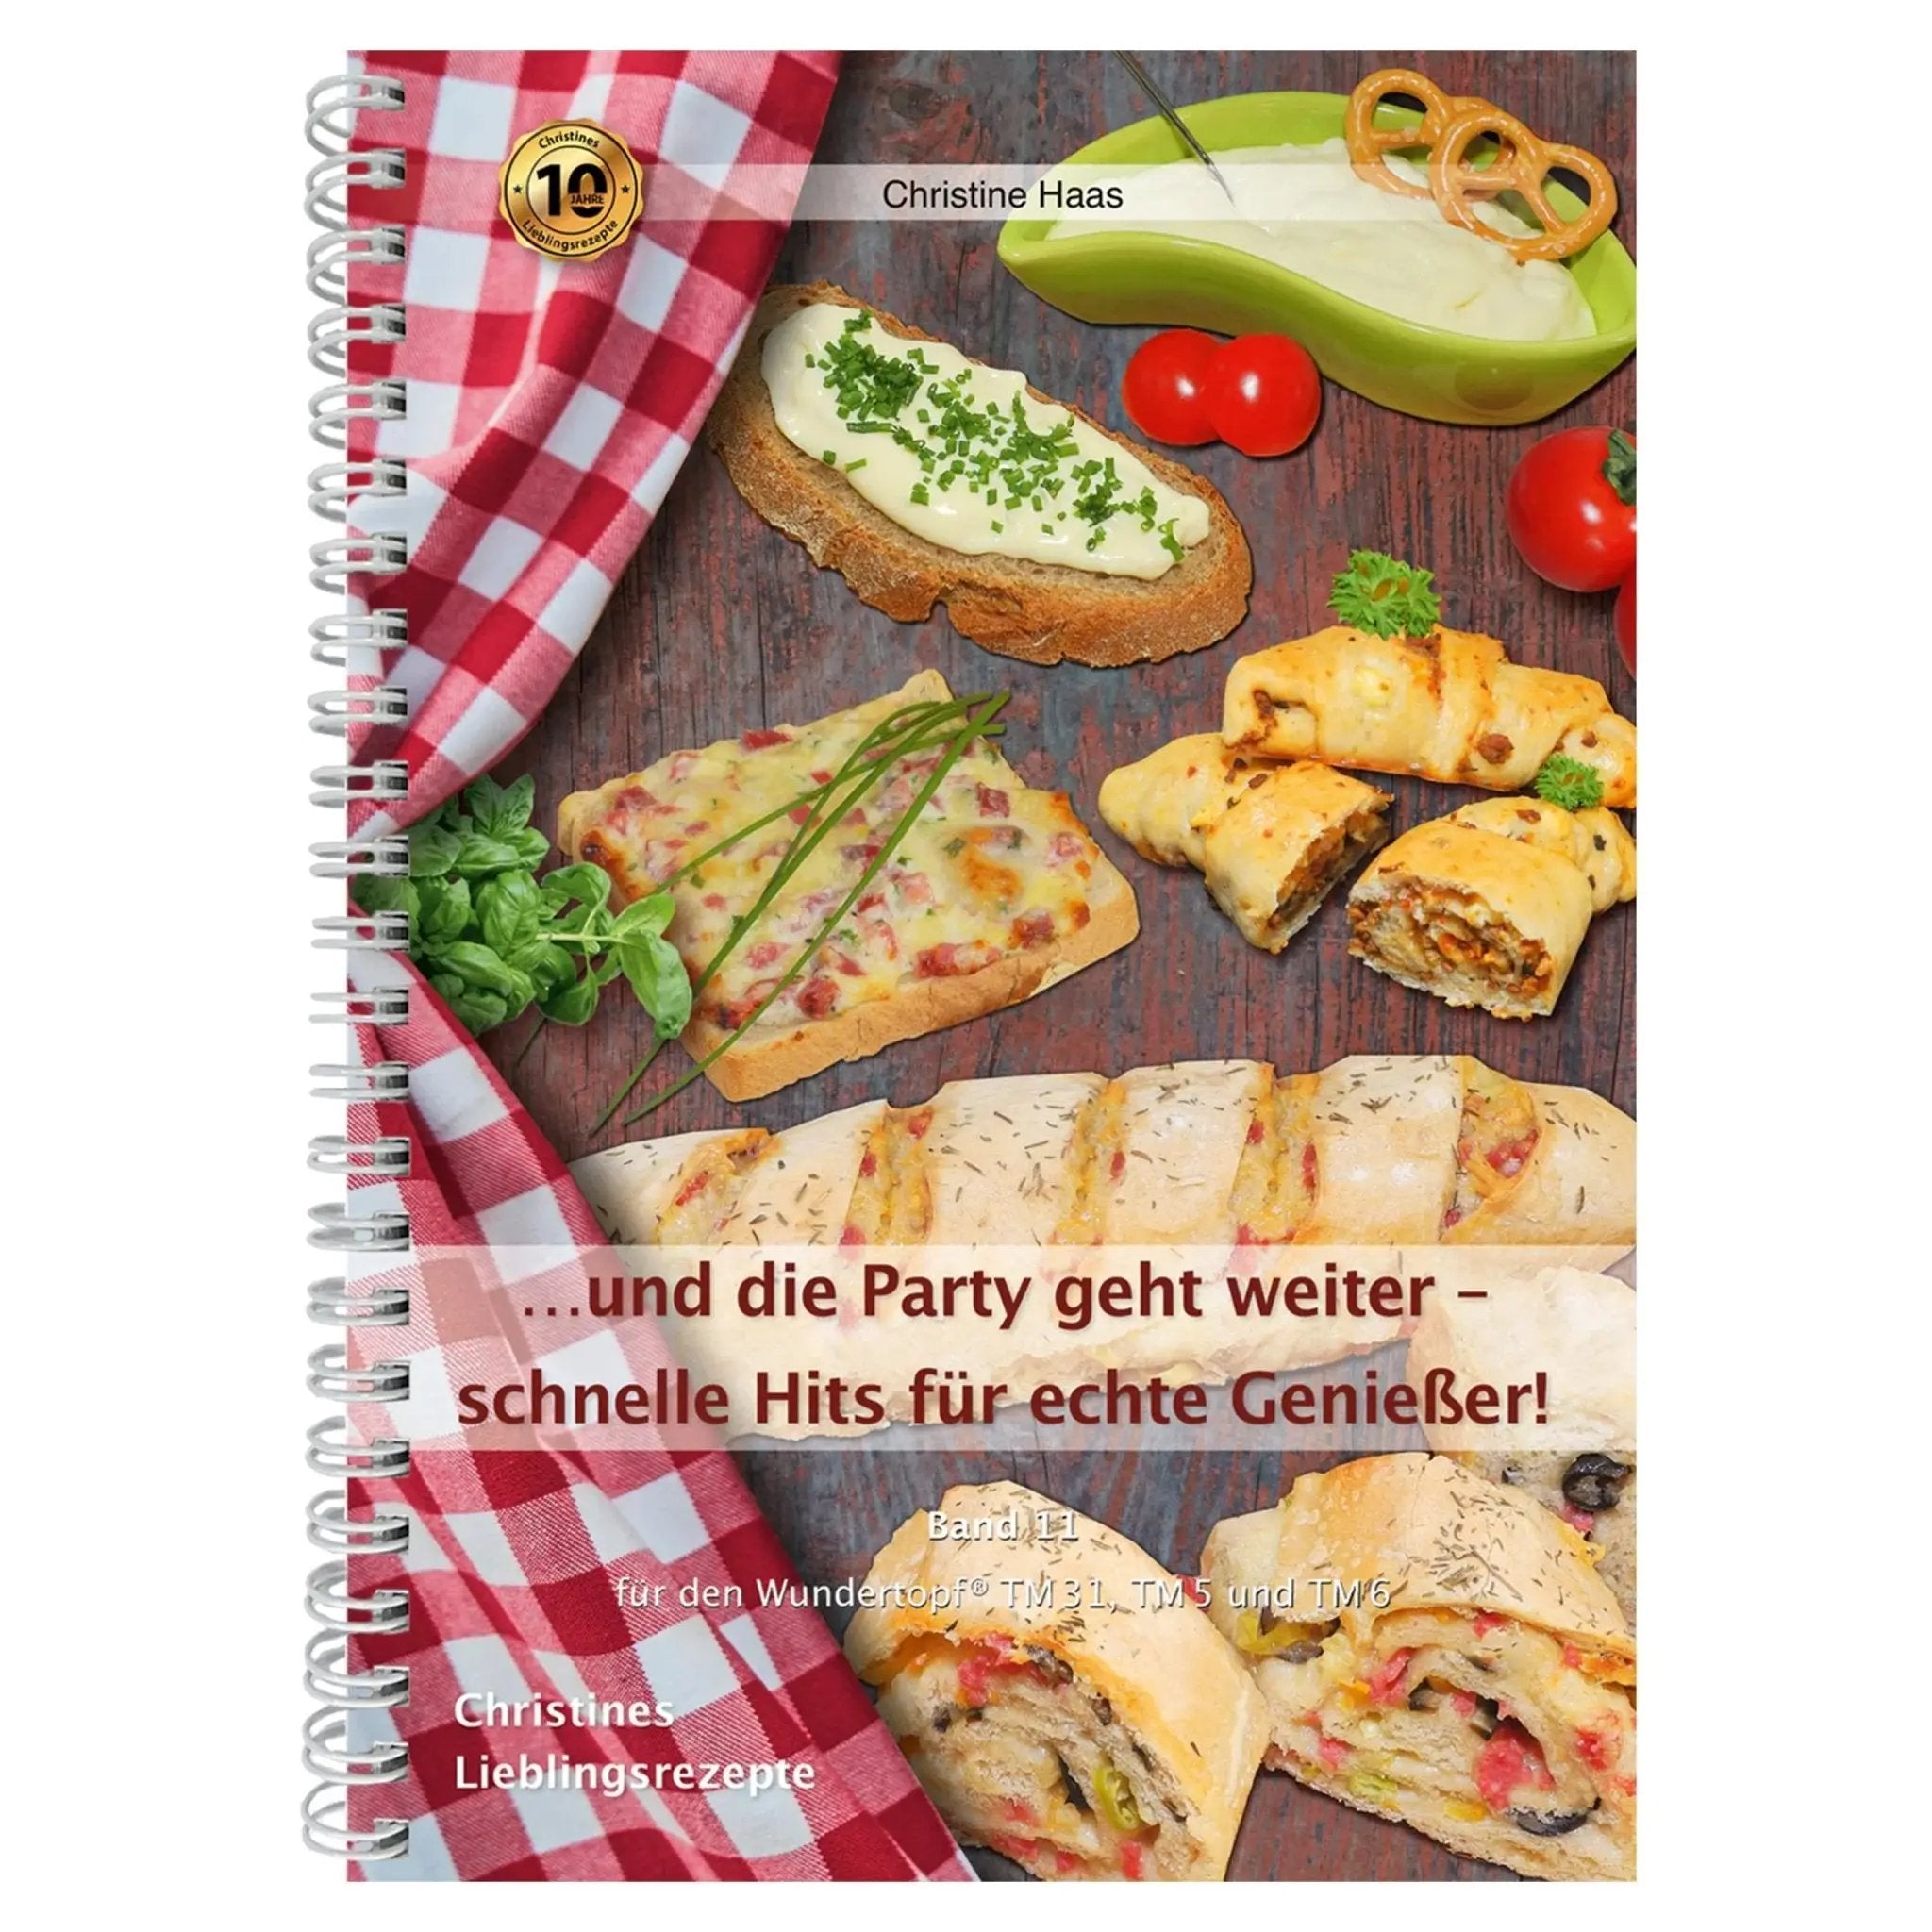 ...und die Party geht weiter - schnelle Hits für Genießer! | Christine Haas | Band 11 - Wundermix GmbH